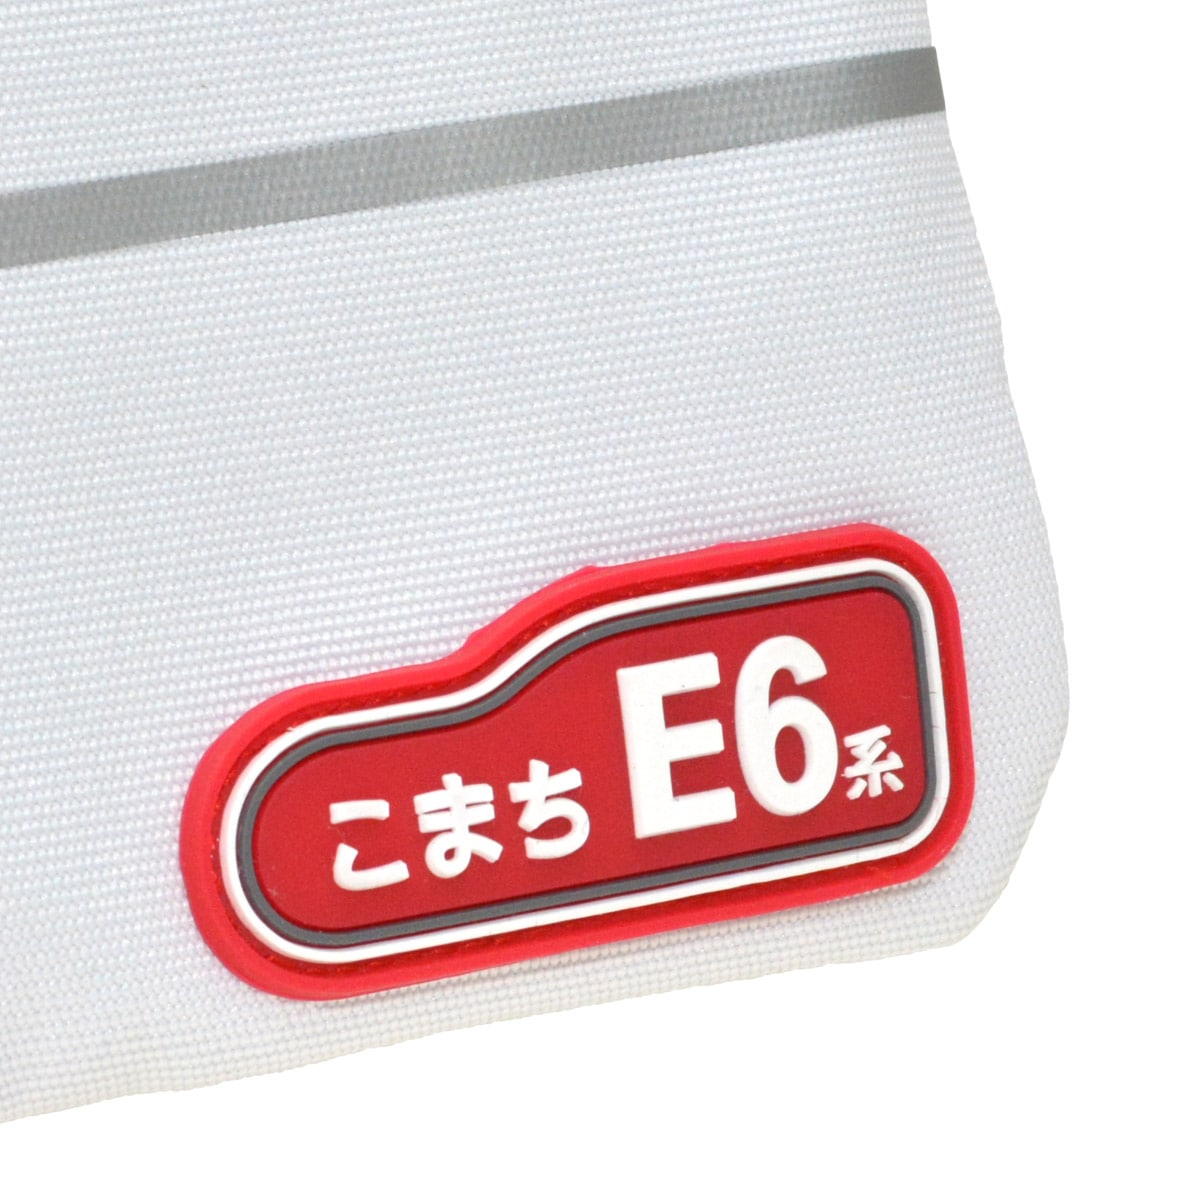 セール品 壁掛け おもいでハカれ〜る E6系こまち 05566メーカー直送KO 代引き ラッピング キャンセル不可 terahaku.jp